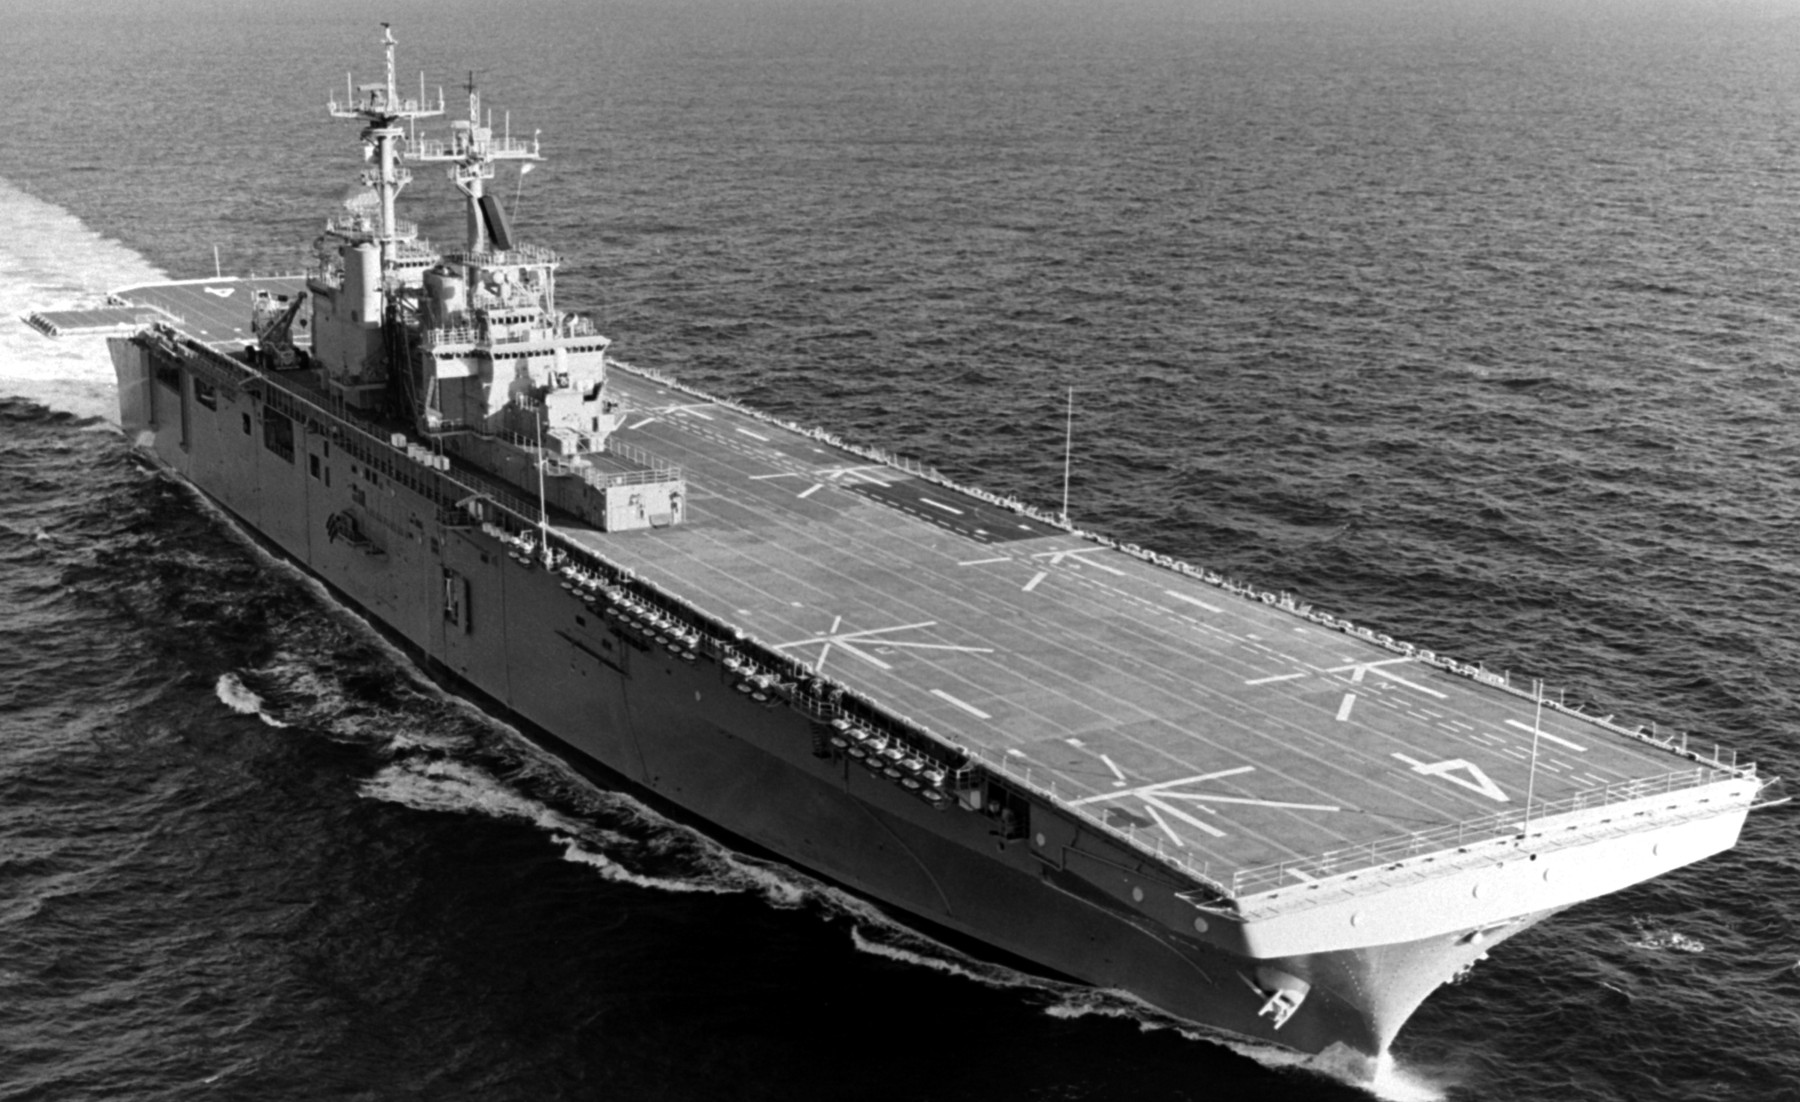 lhd-4 uss boxer wasp class amphibious assault ship dock landing us navy trials 04